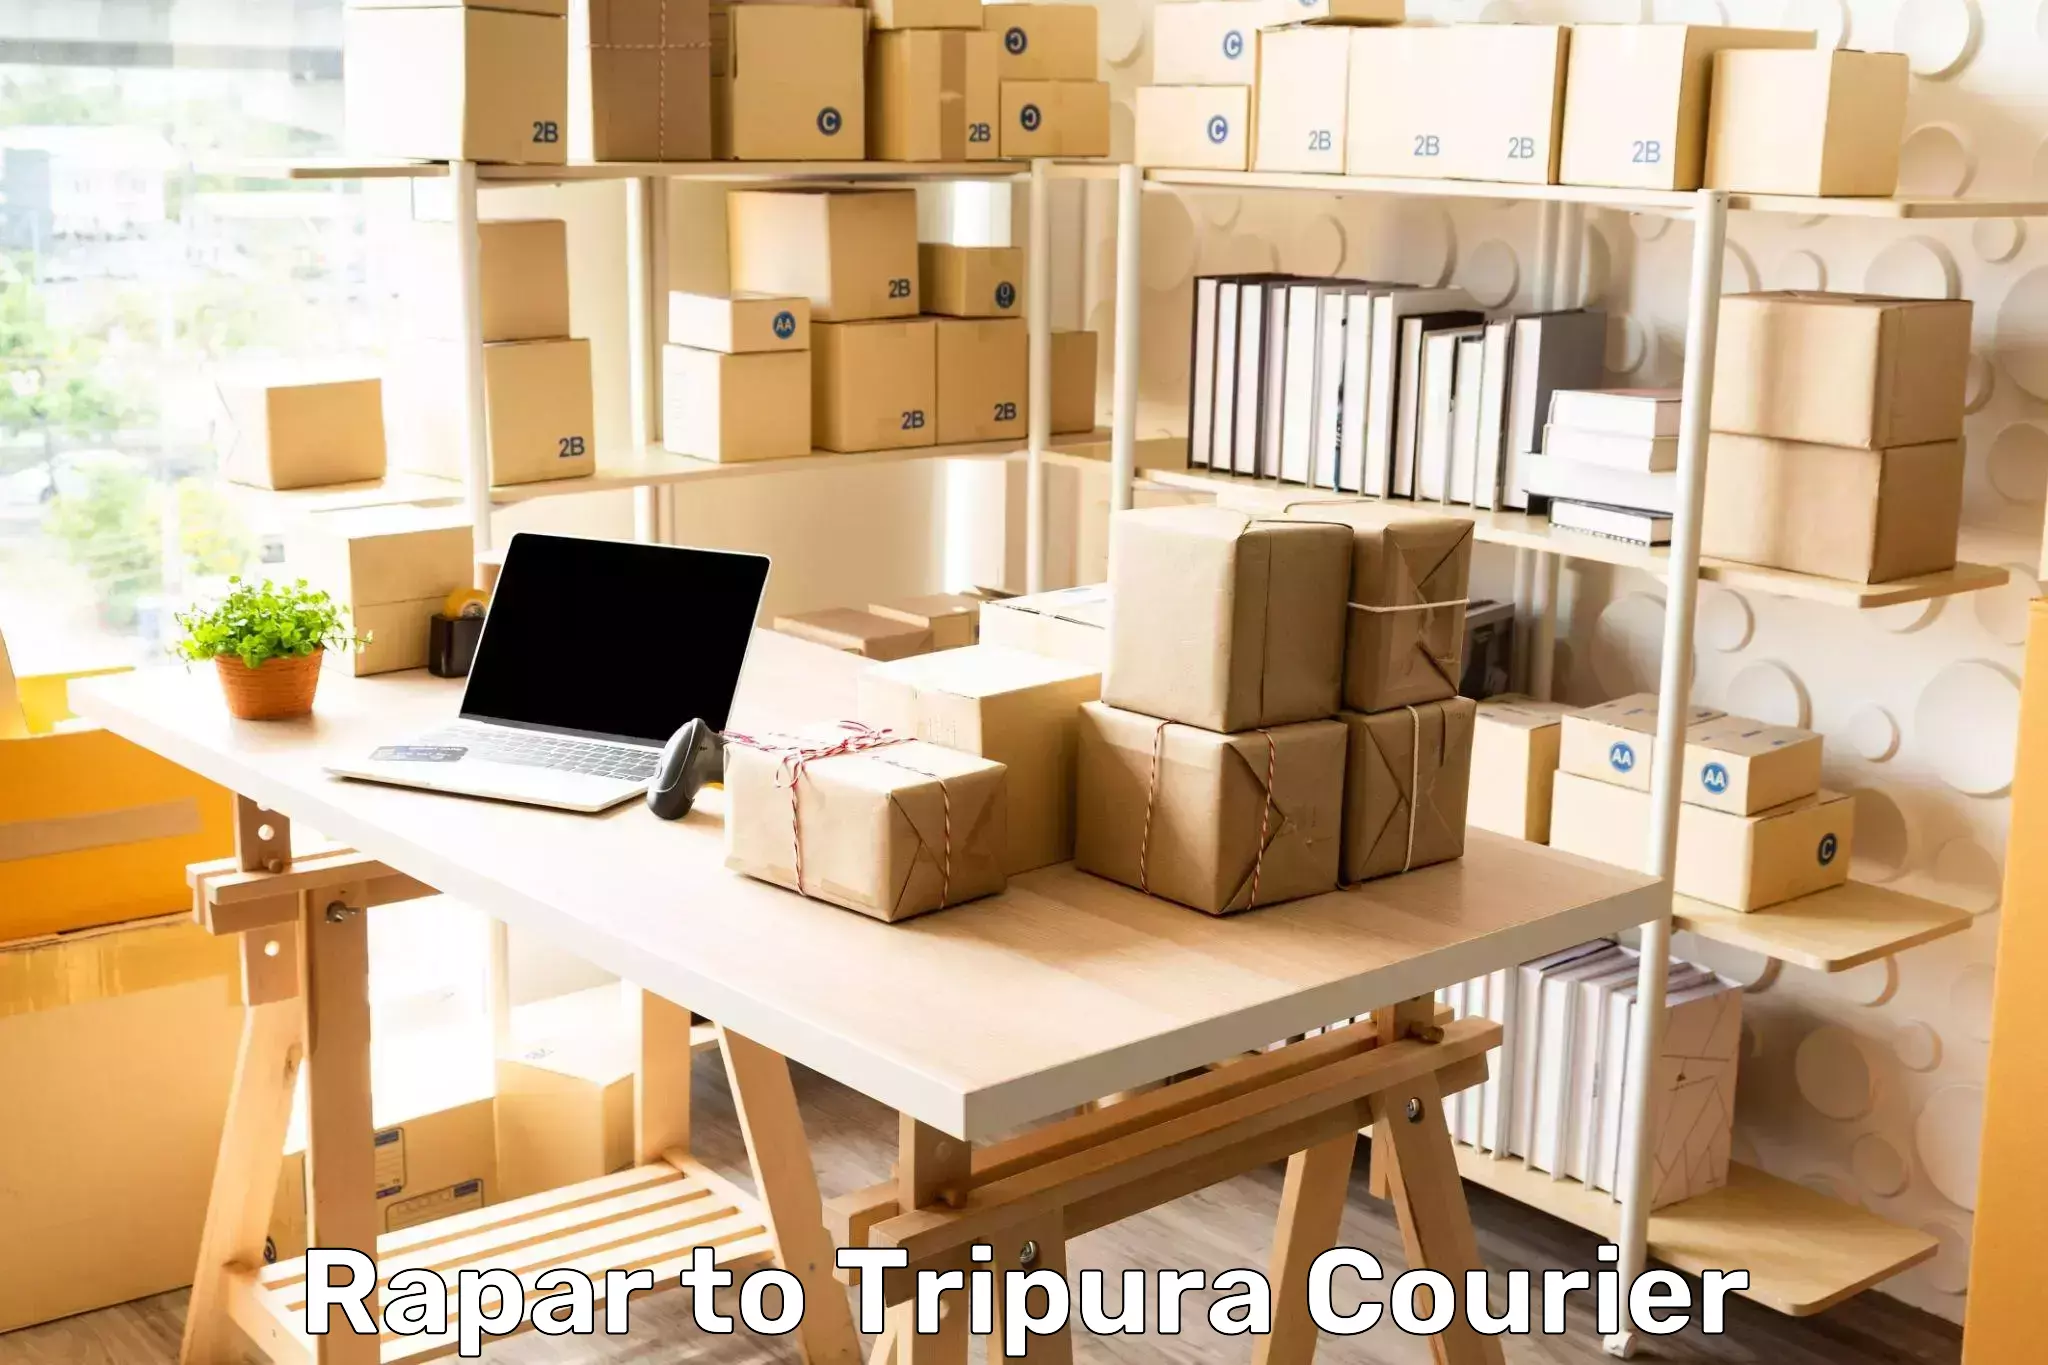 Return courier service Rapar to Tripura